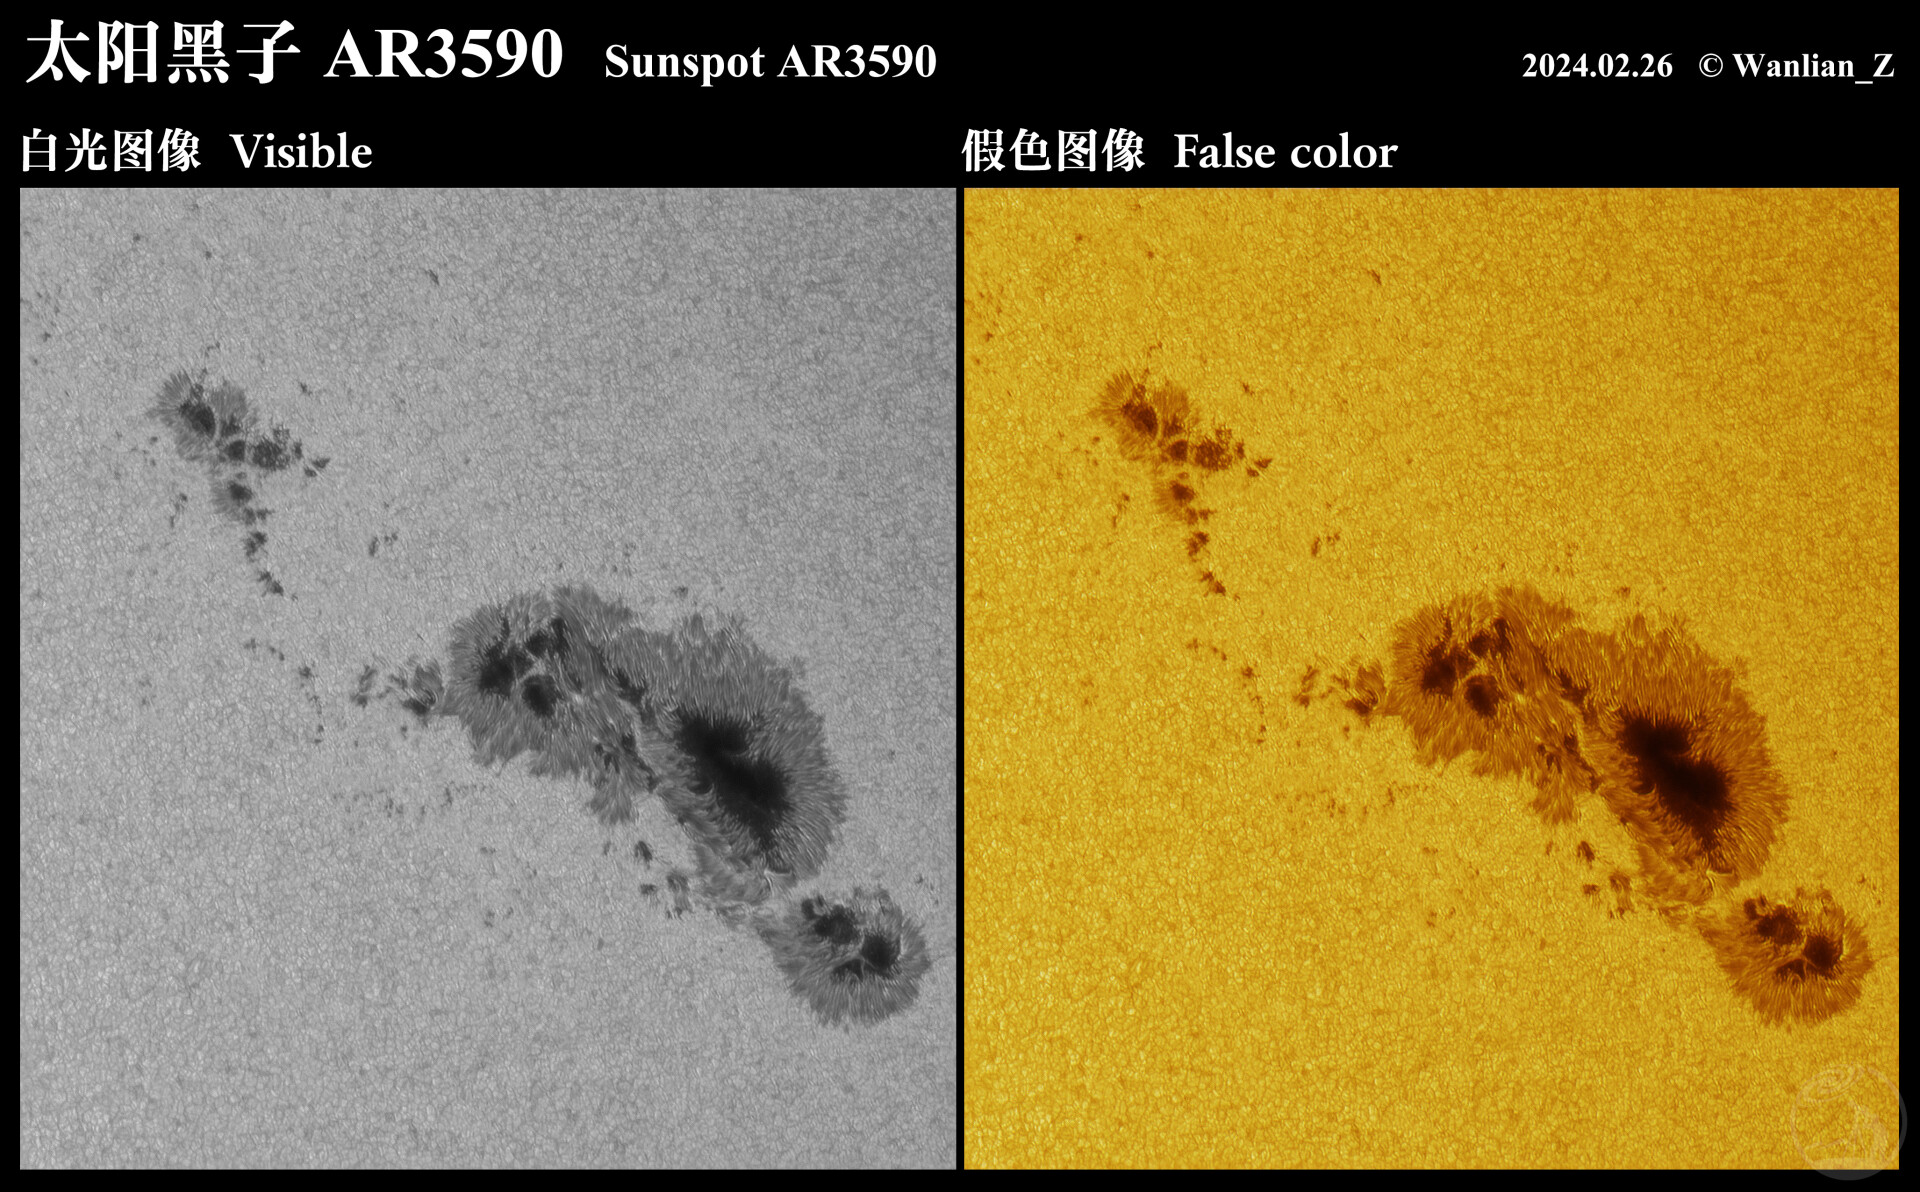 太阳黑子AR3590白光/假色对比